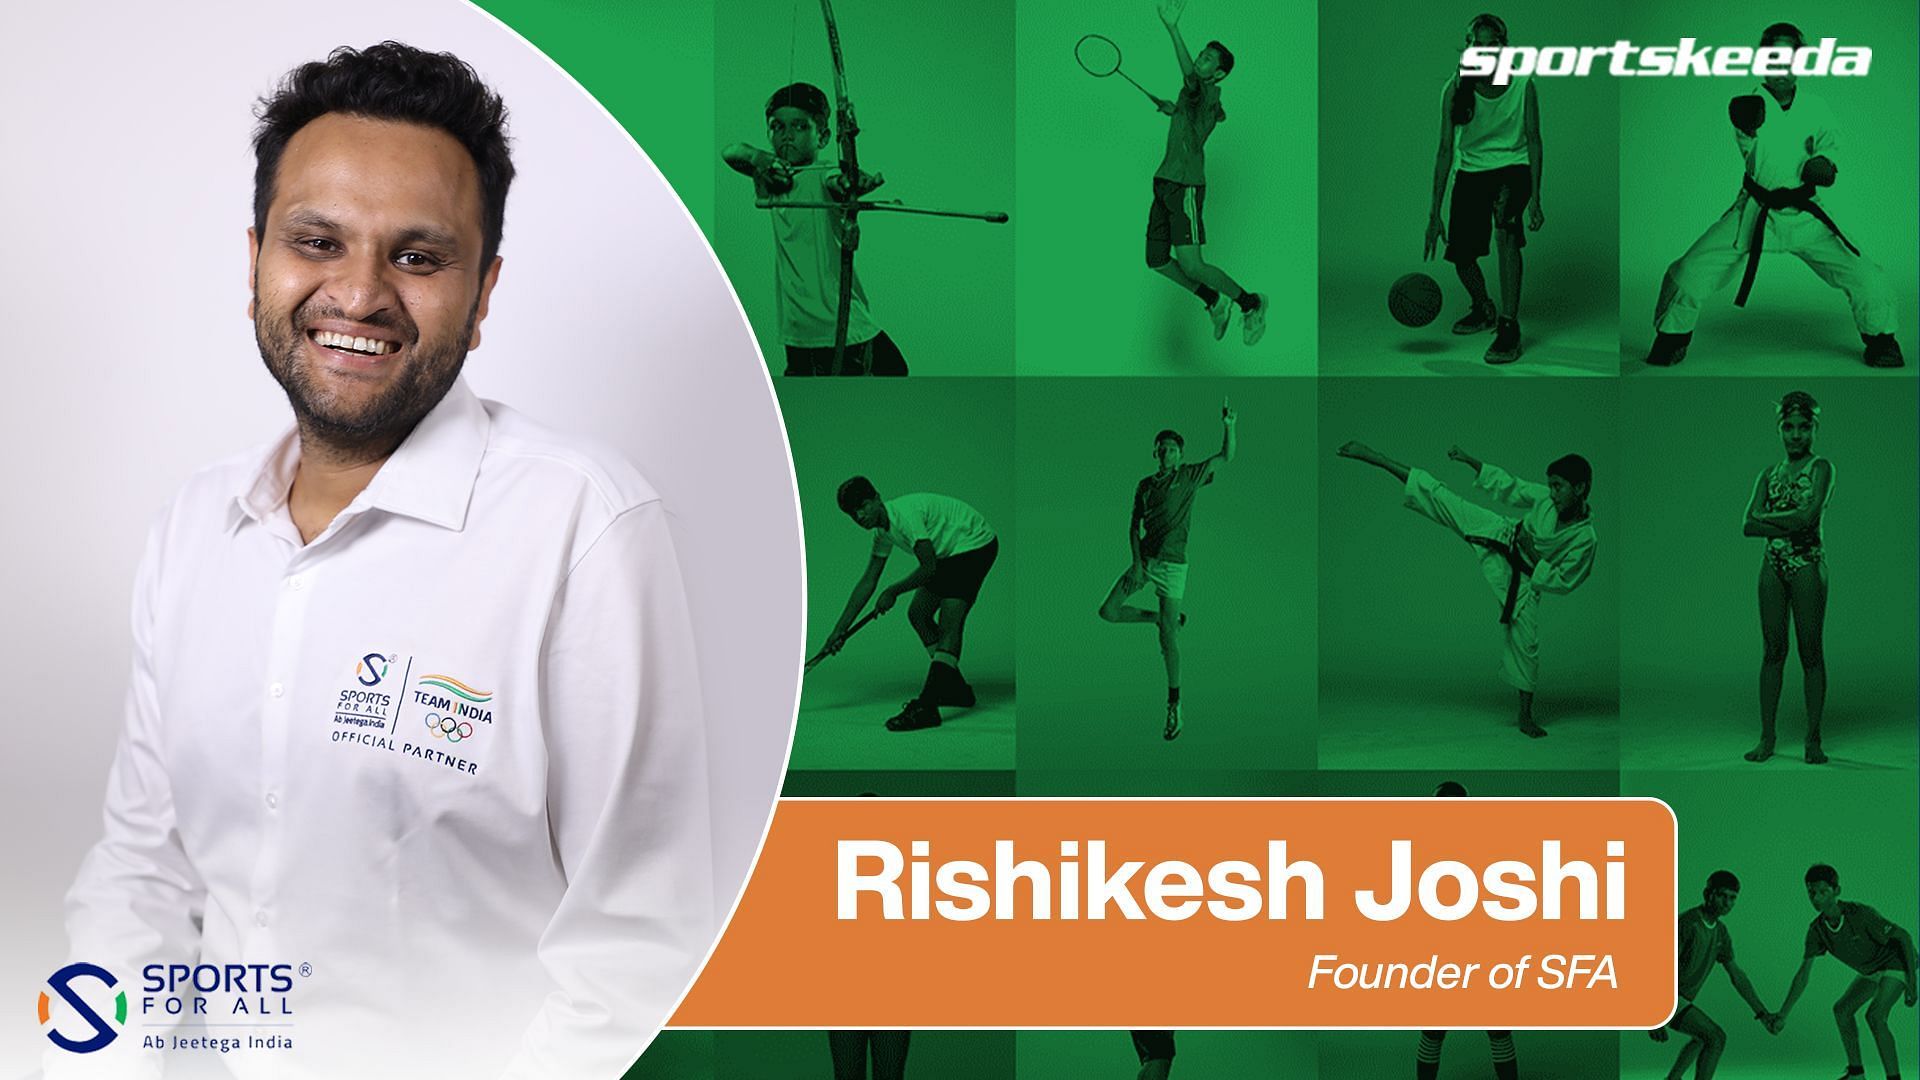 Rishikesh Joshi, Founder of SFA